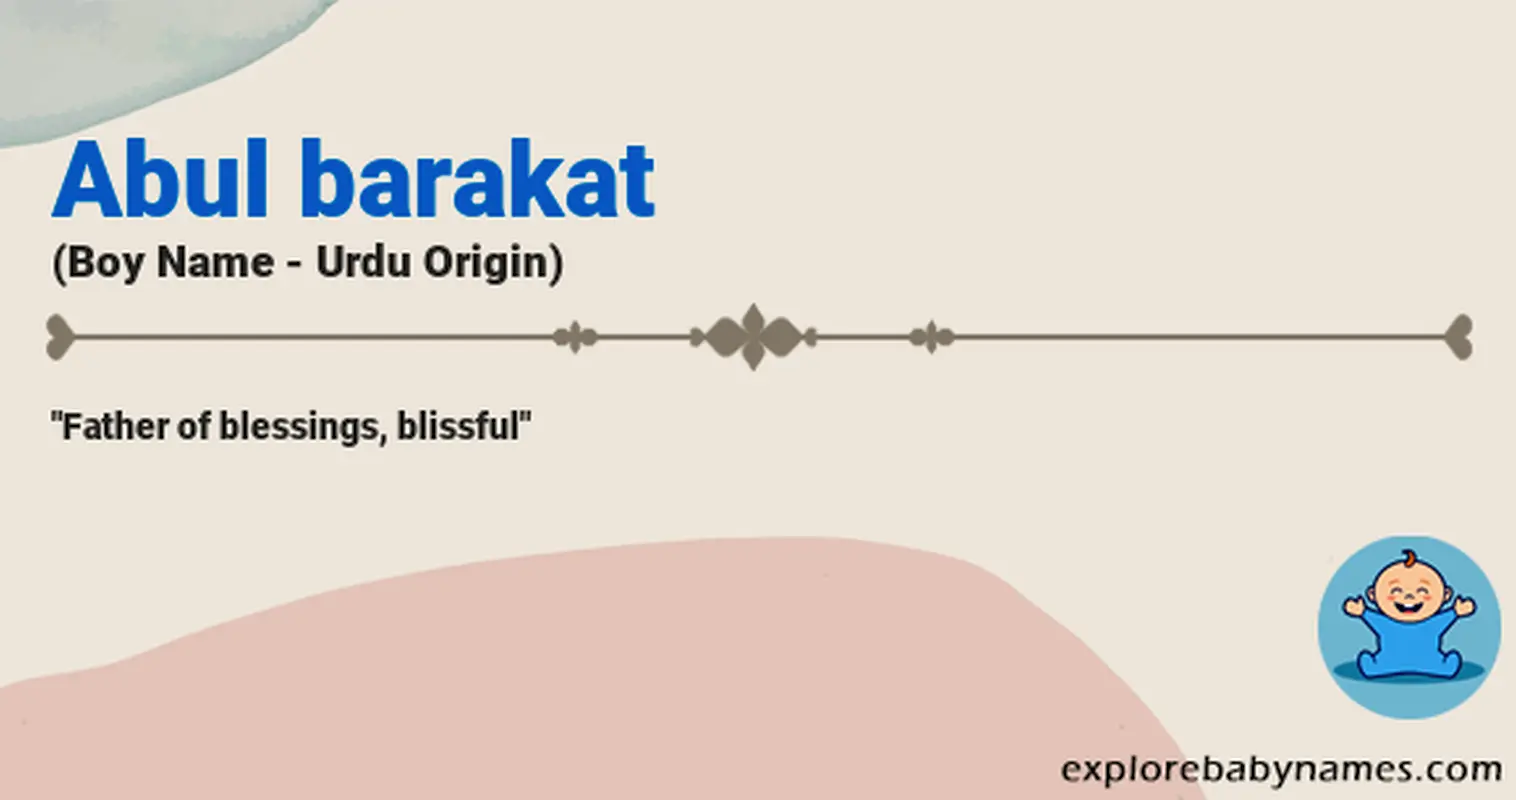 Meaning of Abul barakat